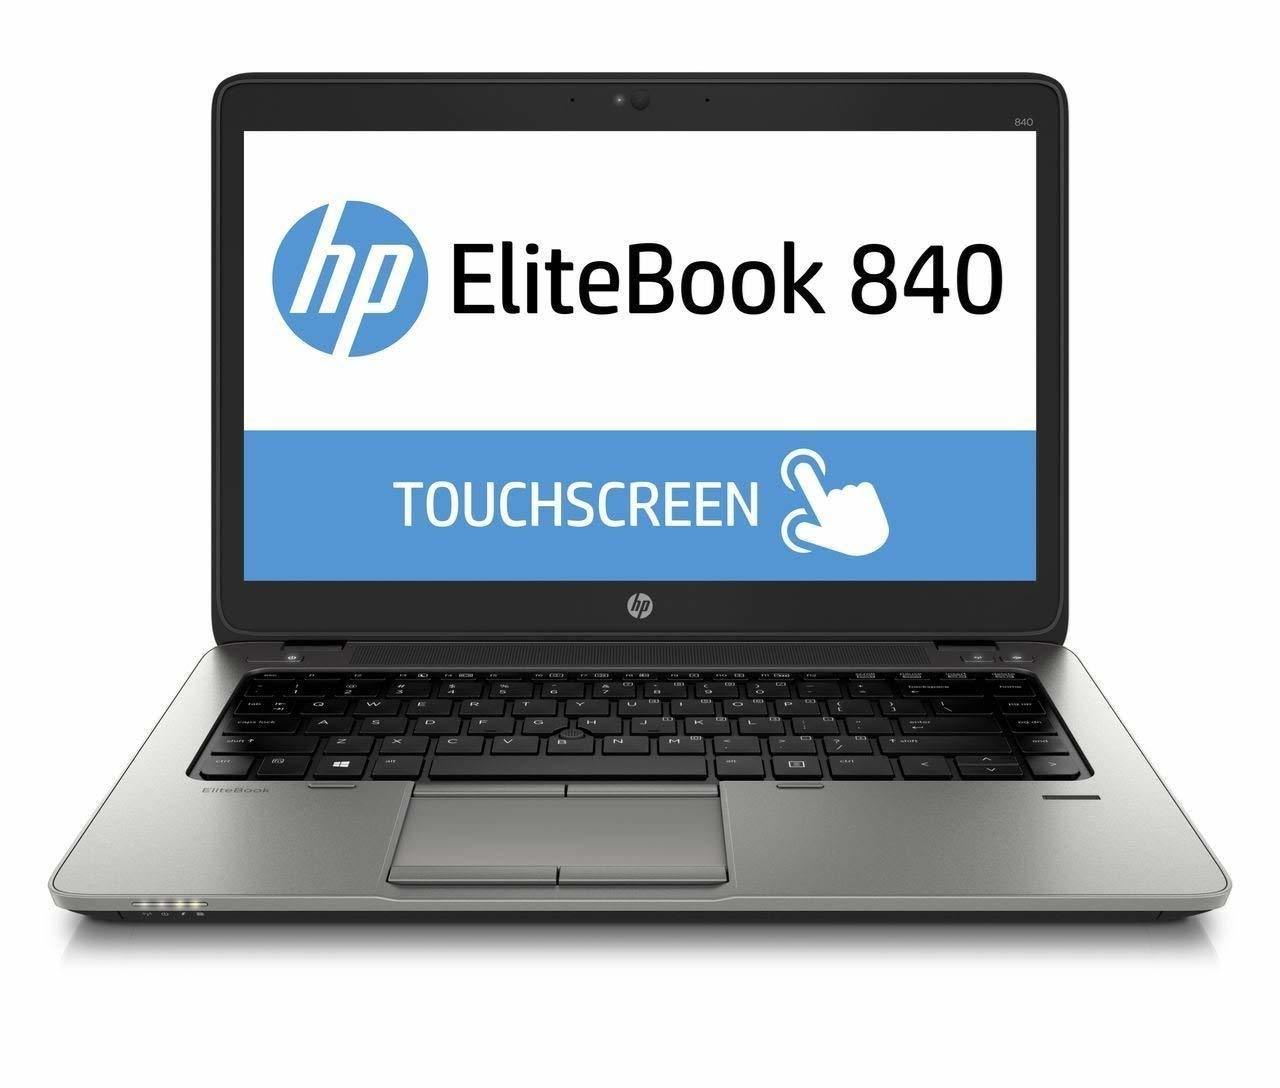 صفحه نمایشHP EliteBook 840 G2